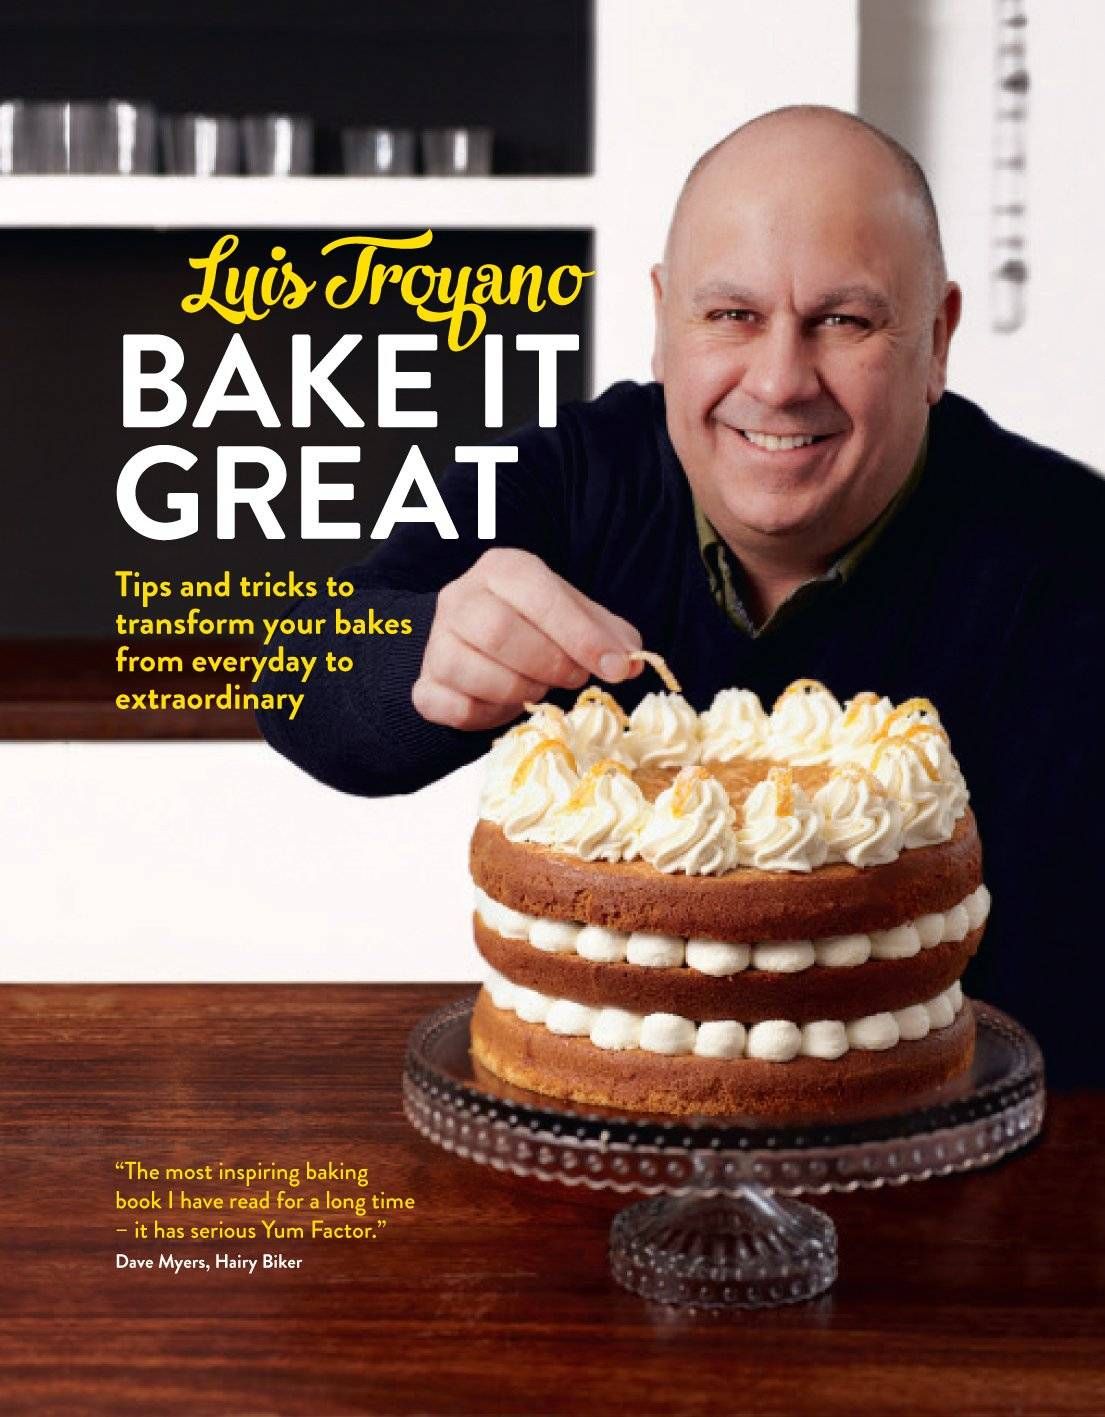 Bake It Great by Luis Troyano